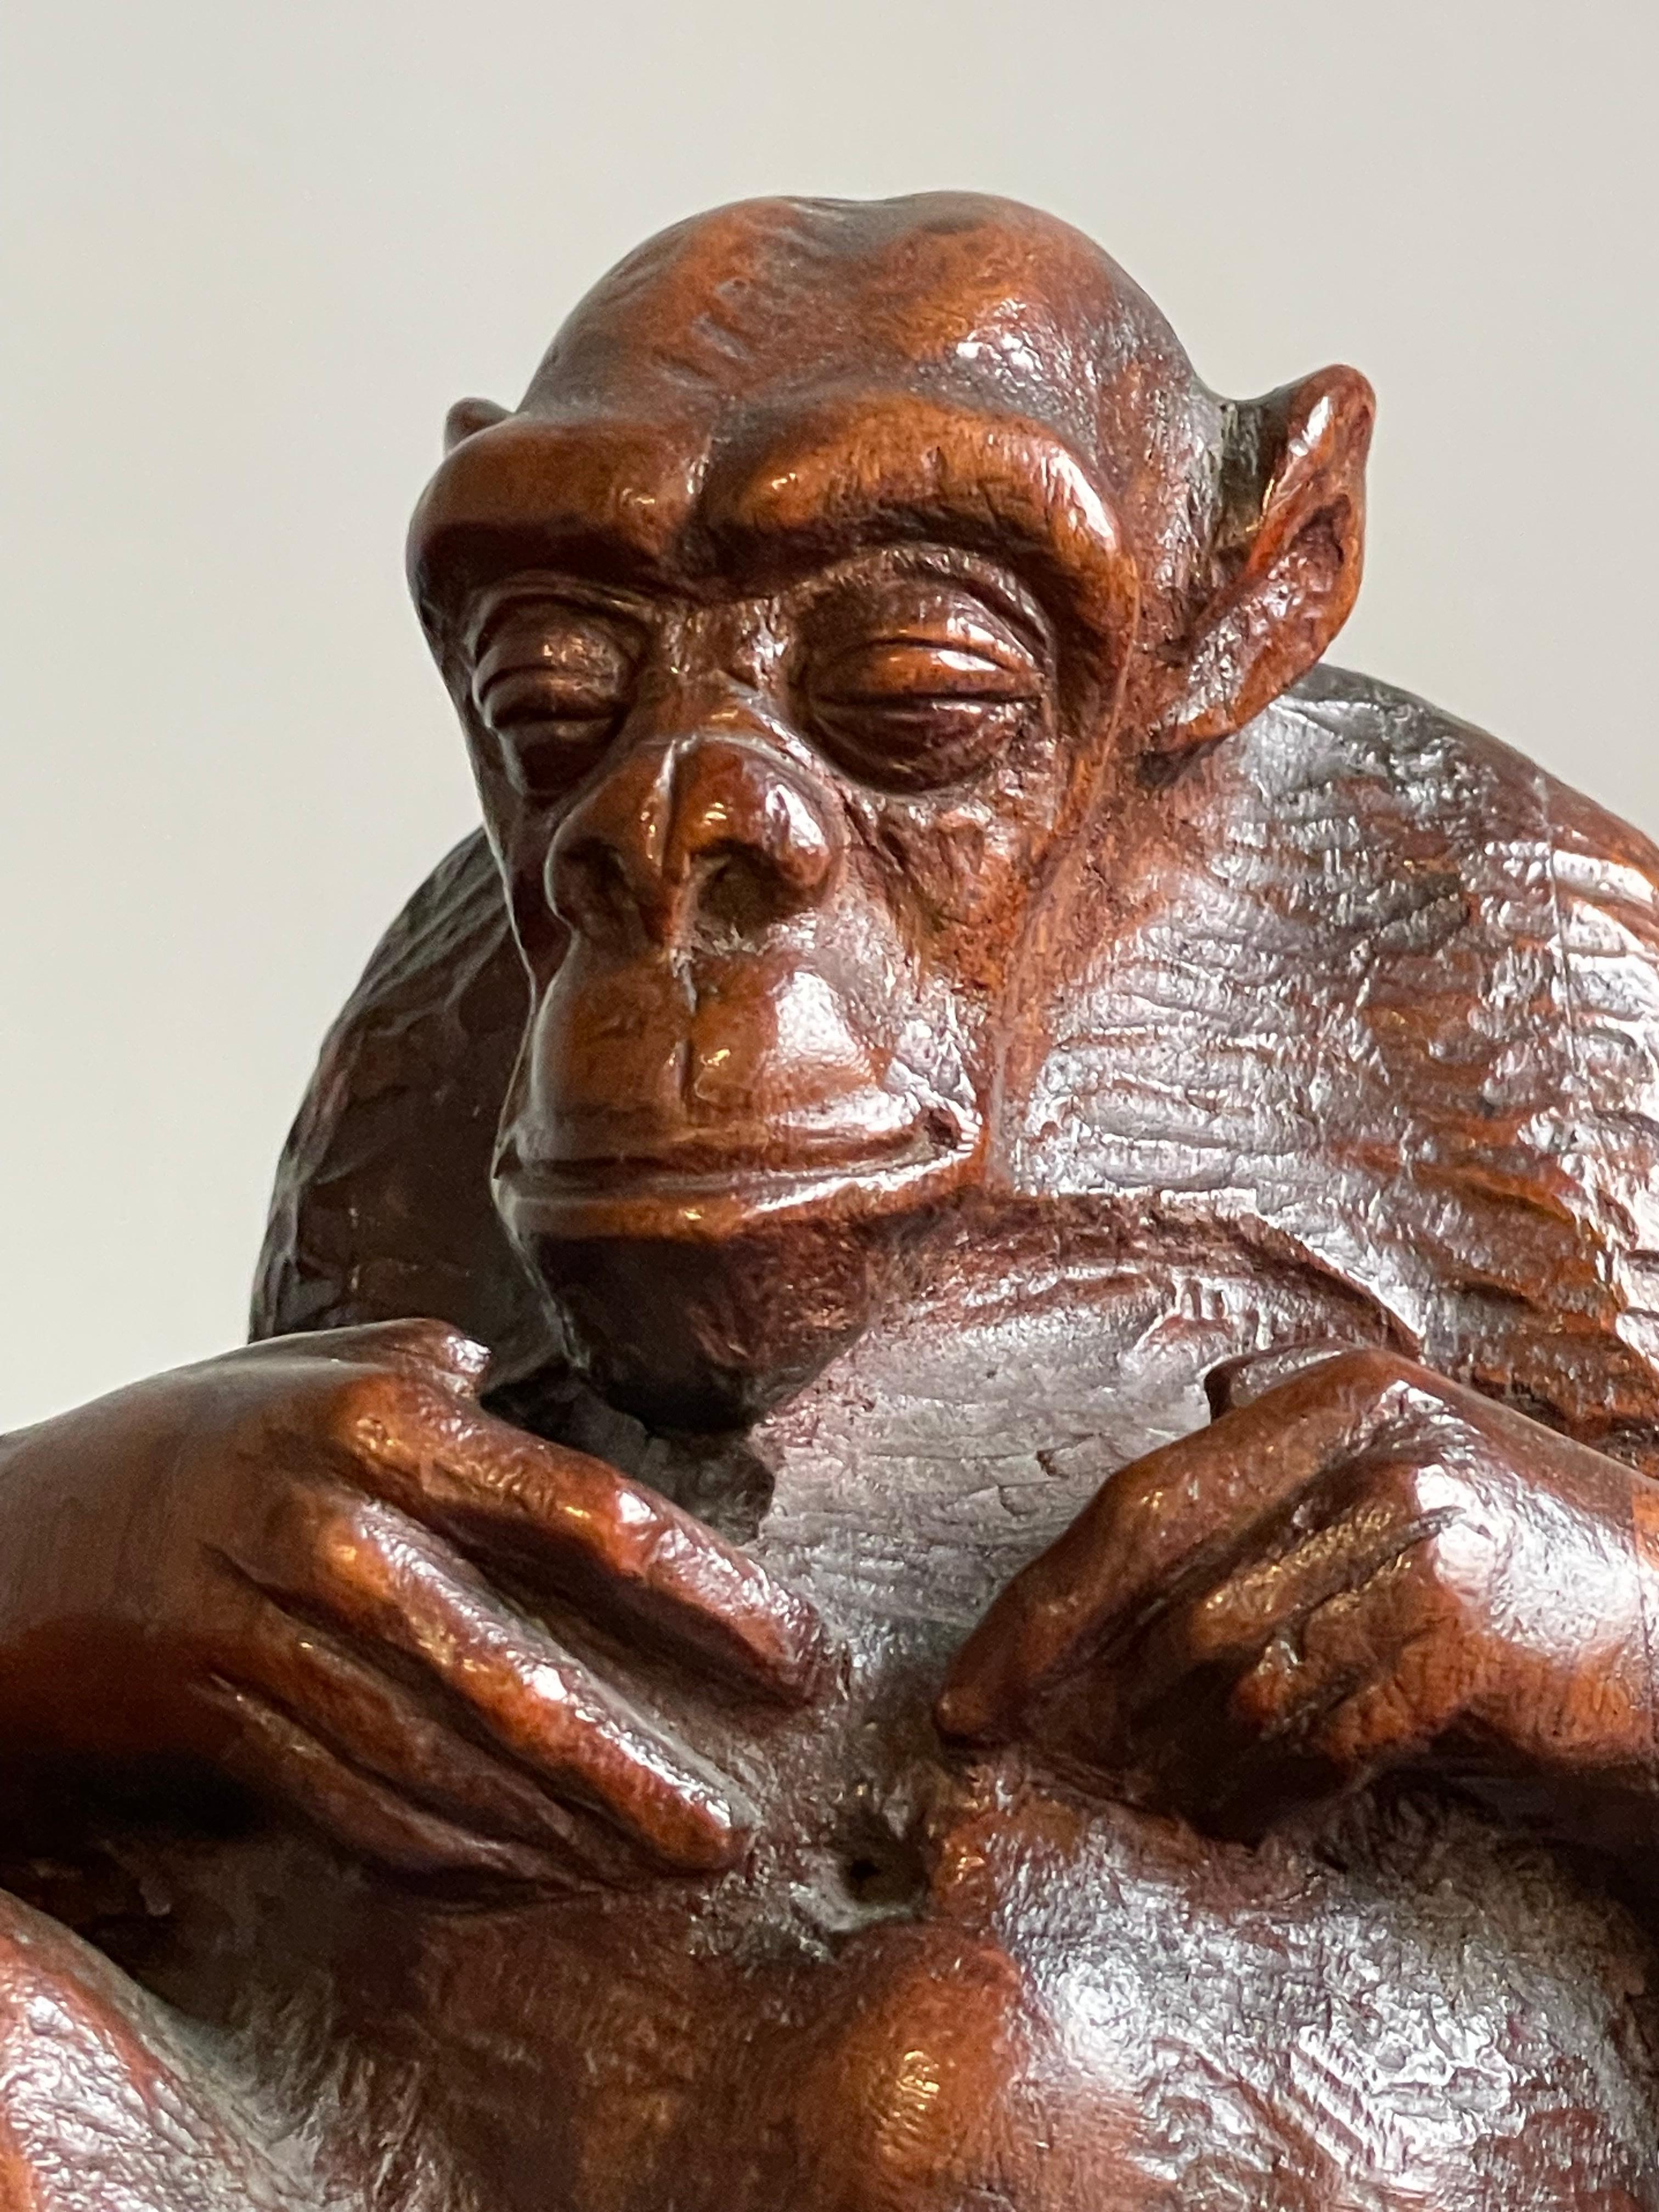 Ce chimpanzé antique merveilleux et significatif est beau pour de nombreuses raisons.

Cette sculpture de chimpanzé rare et ravissante fait sourire tout le monde, mais elle est aussi impressionnante par la qualité de la sculpture et sa